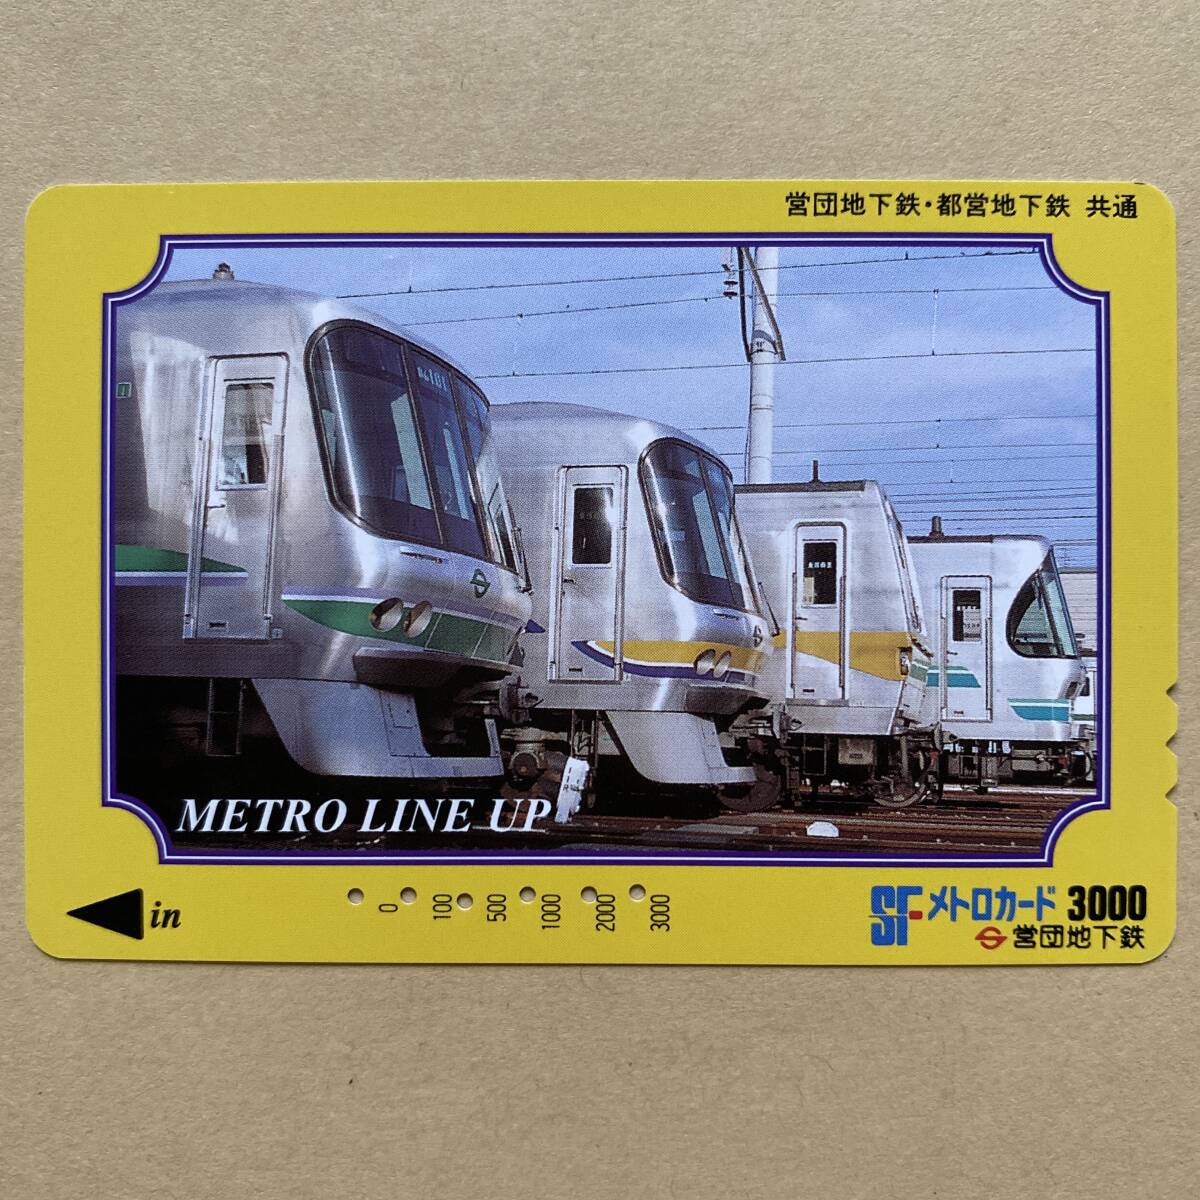 【使用済】 メトロカード 営団地下鉄 東京メトロ METRO LINE UP_画像1